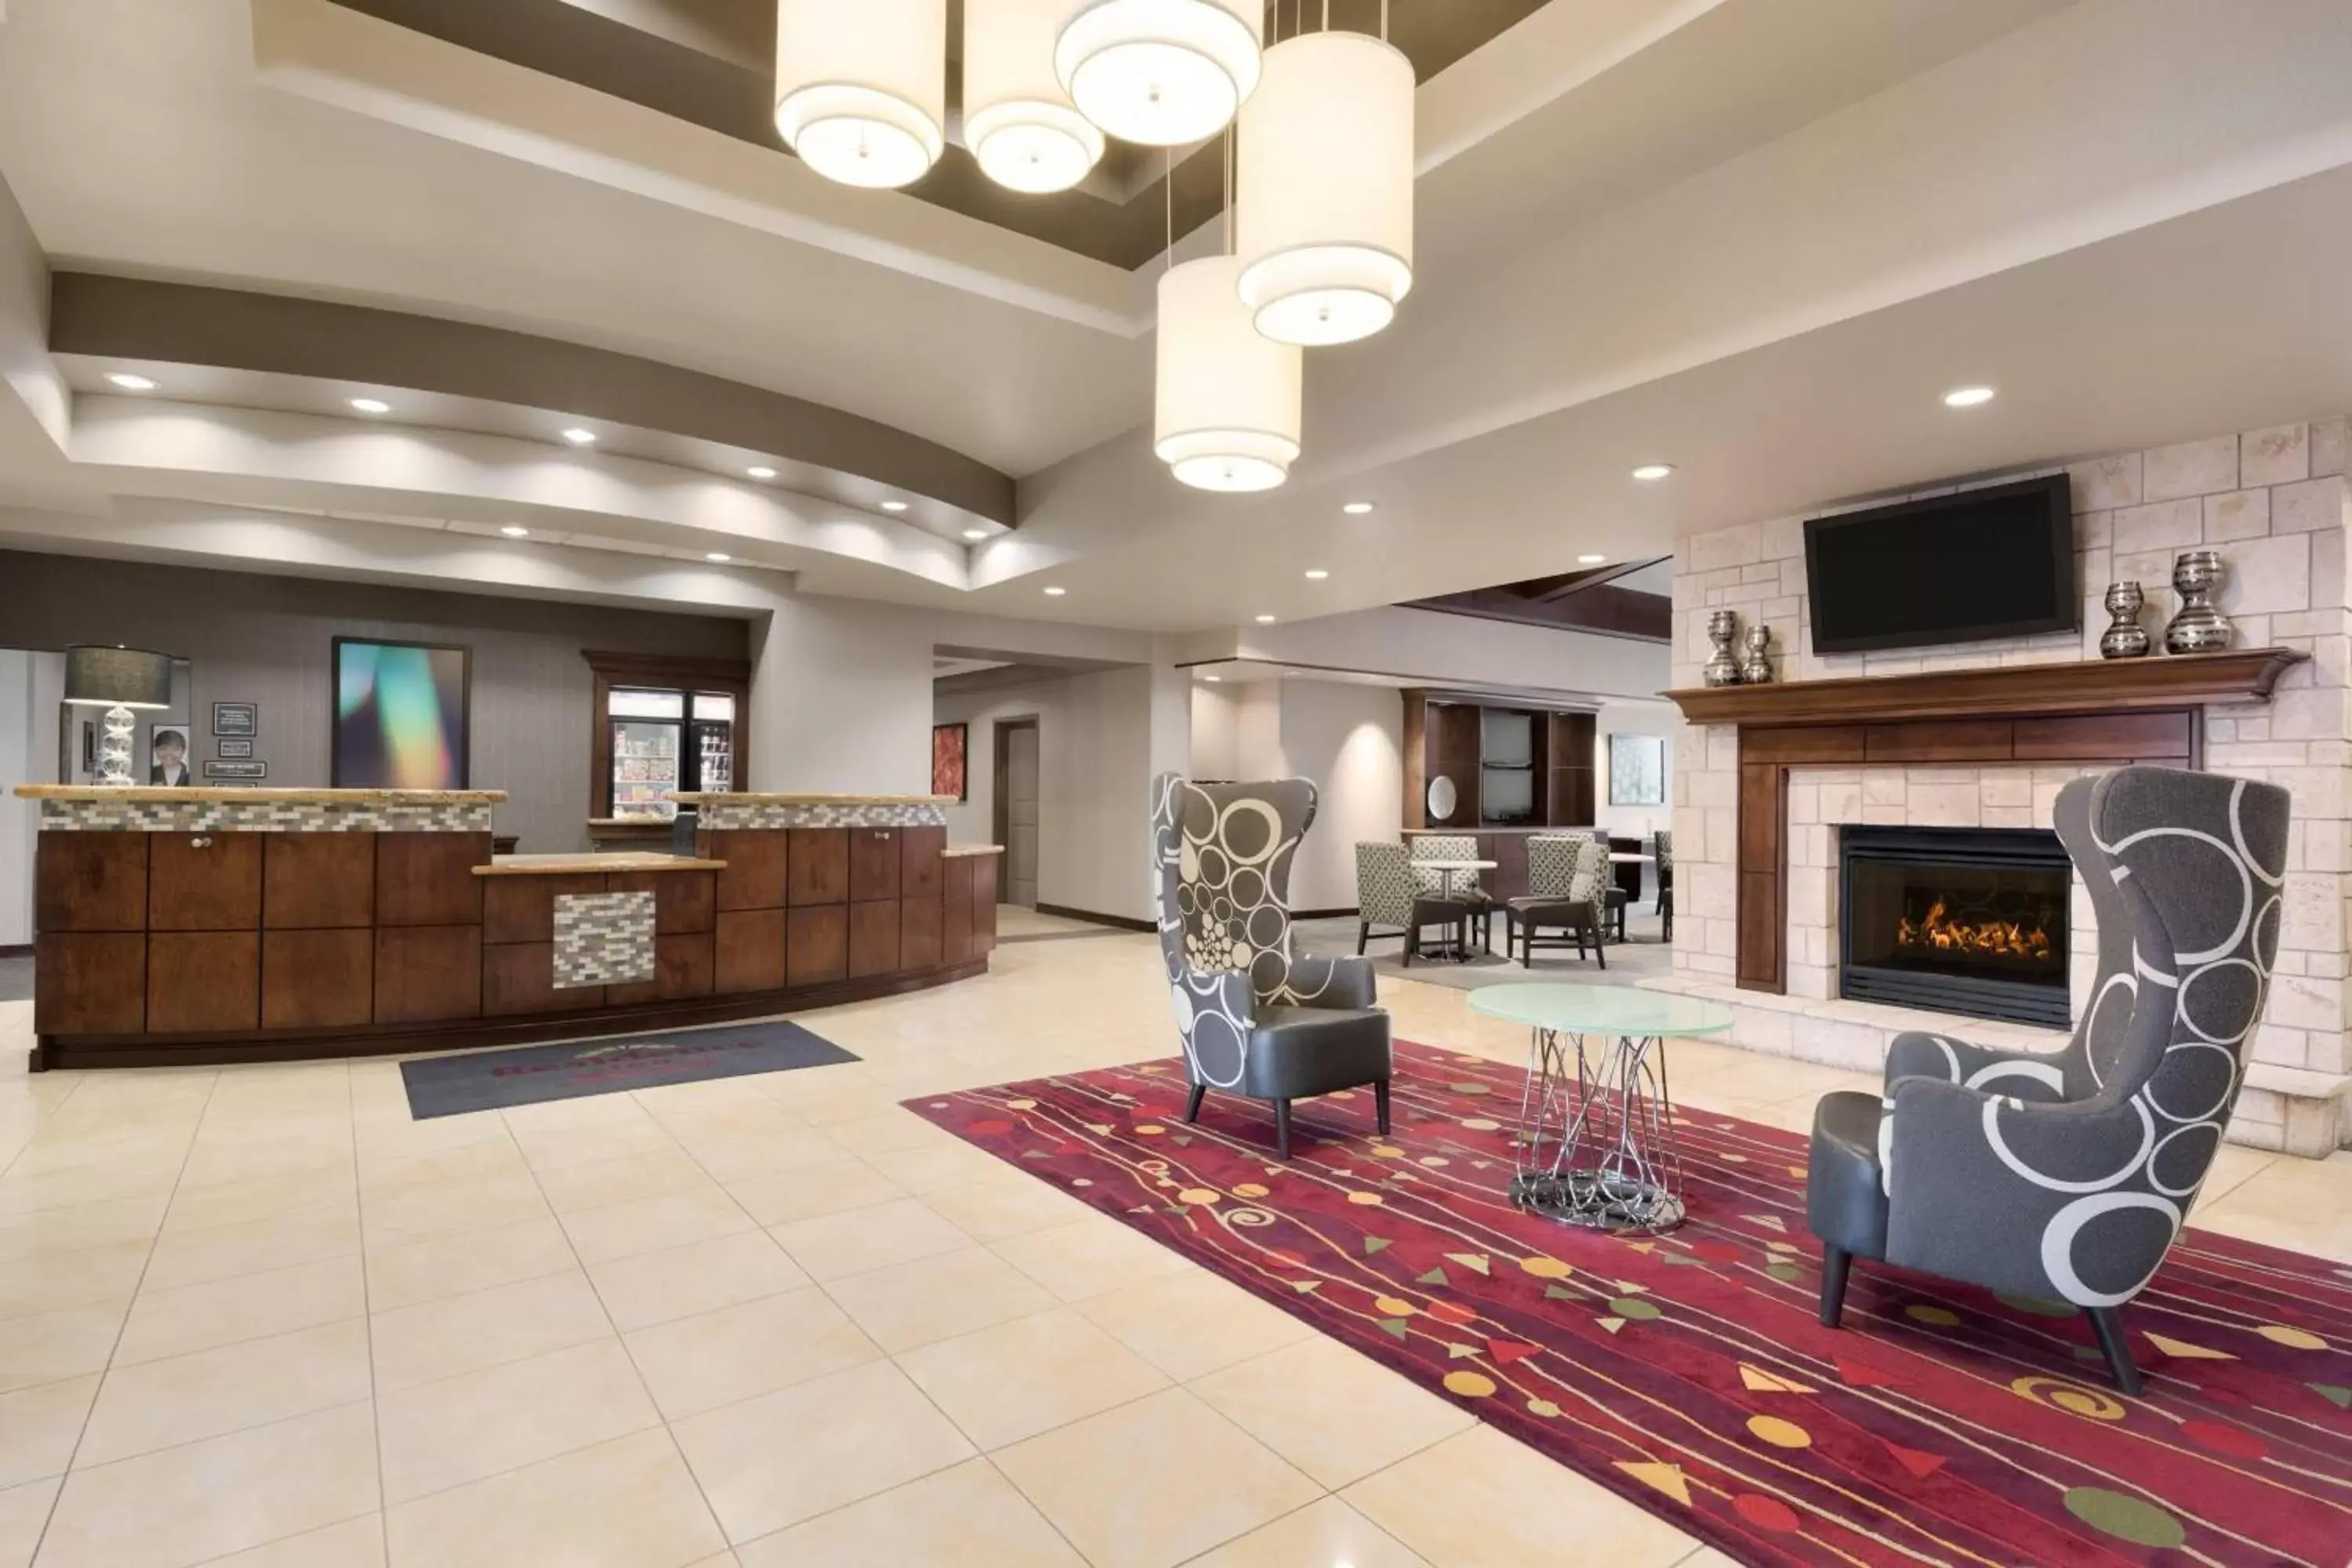 Lobby or reception, Lobby/Reception in Residence Inn by Marriott Oklahoma City Downtown/Bricktown